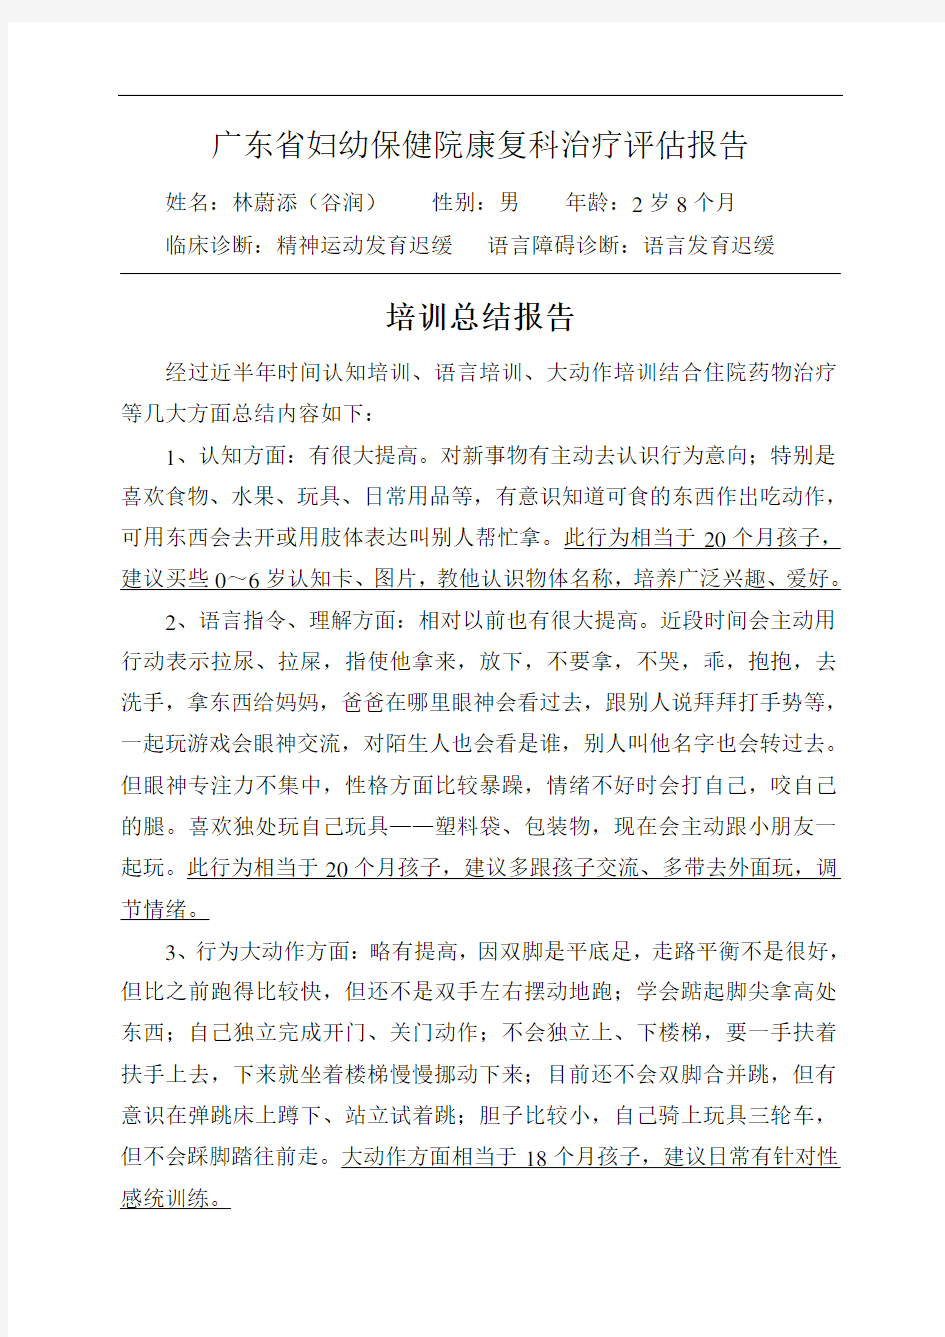 广东省妇幼保健院康复科治疗评估报告